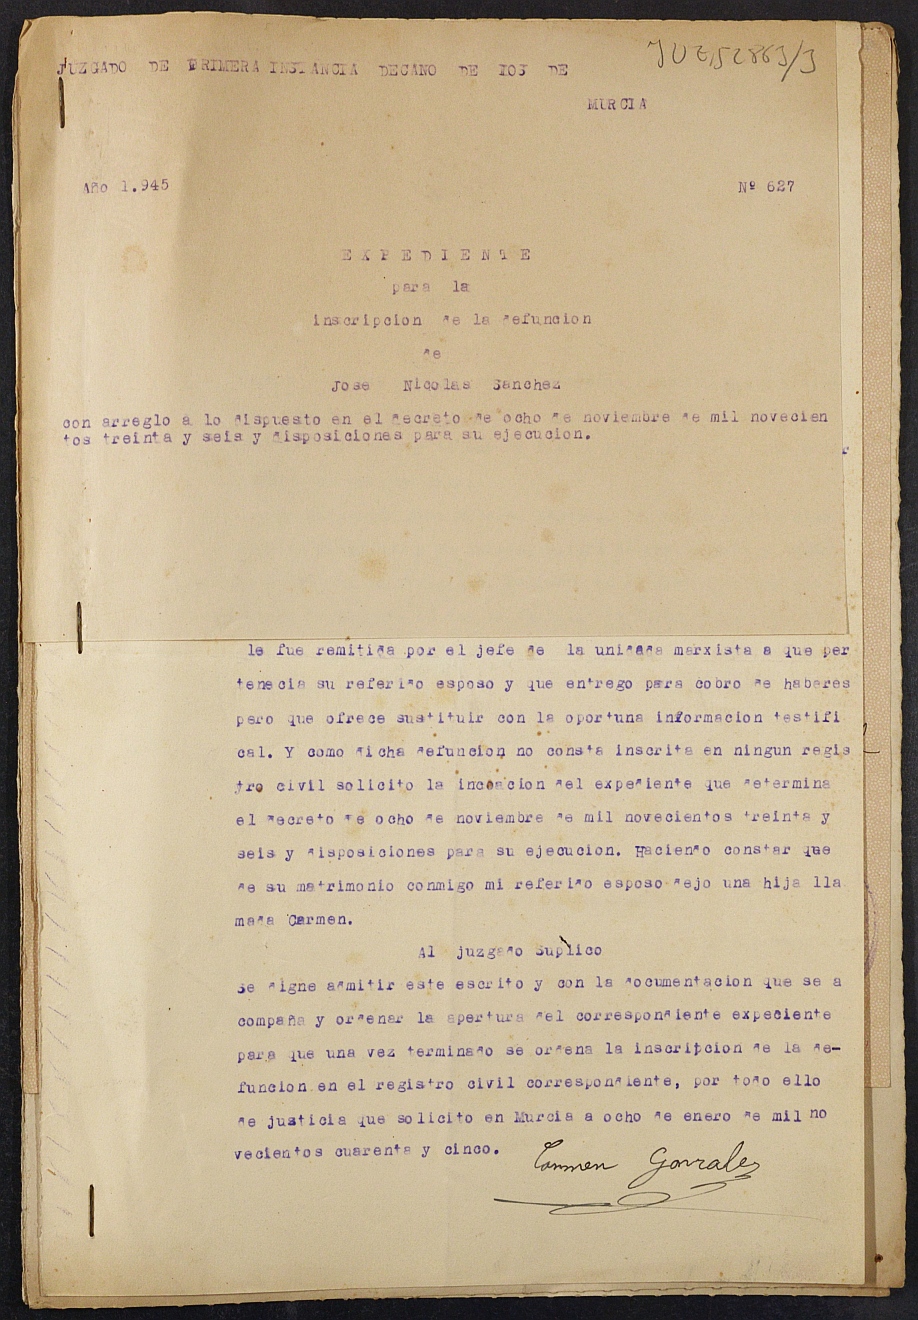 Expediente nº 627/1945 del Juzgado de Primera Instancia de Murcia para la inscripción en el Registro Civil por la defunción de José Nicolás Sánchez